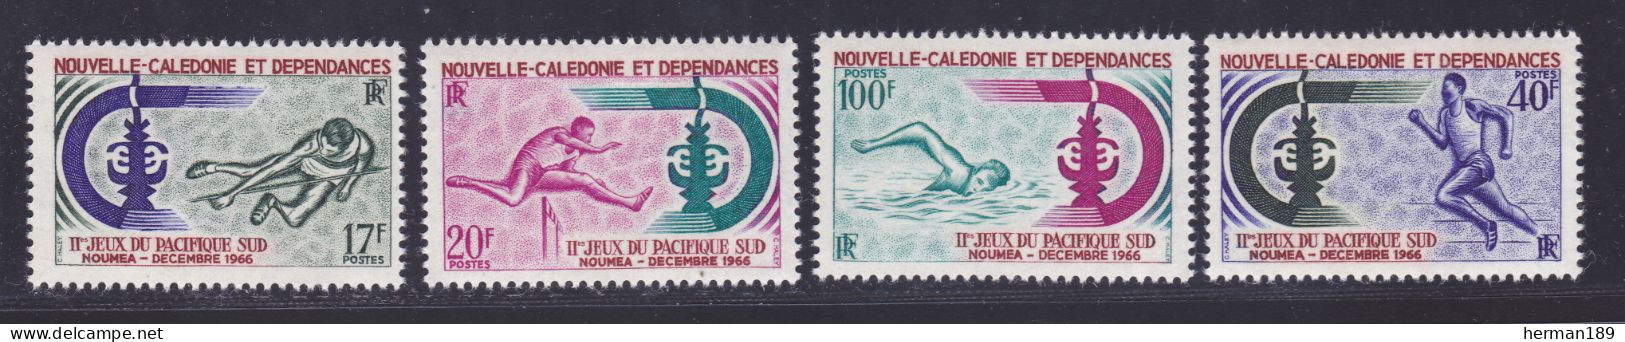 NOUVELLE CALEDONIE N°  332 à 335 ** MNH Neufs Sans Charnière, TB (D7473) Jeux Du Pacifique Sud - 1966 - Neufs